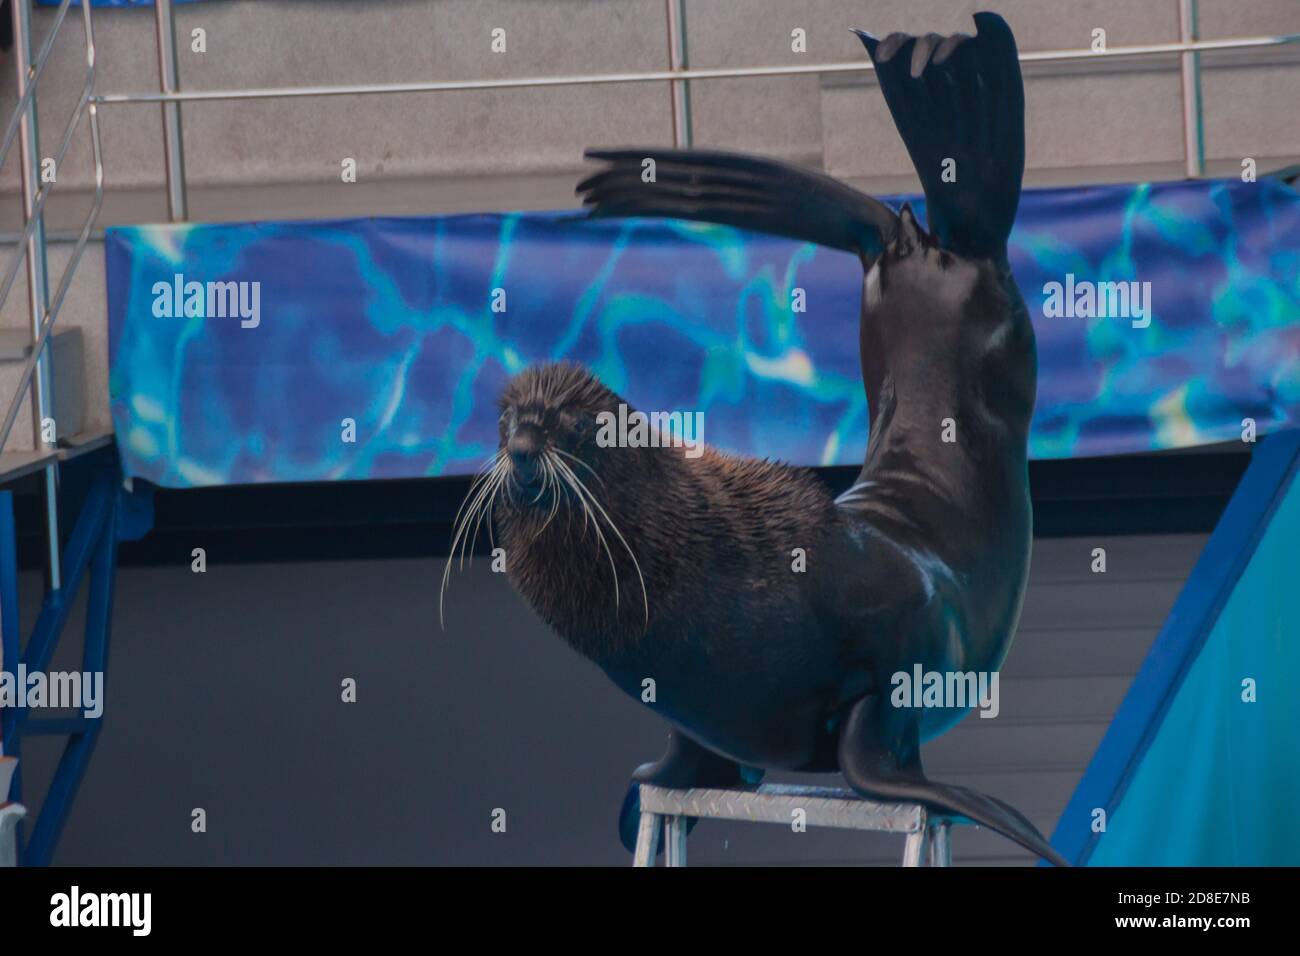 Nette flauschige, pinniped Robbe führt bei einer Show in einem Delfinarium, einem Aquarium. Trainierte Pelzrobbe spielt mit einem Ball, eine Robbe zeigt Tricks auf einer Show von Meerestieren Stockfoto